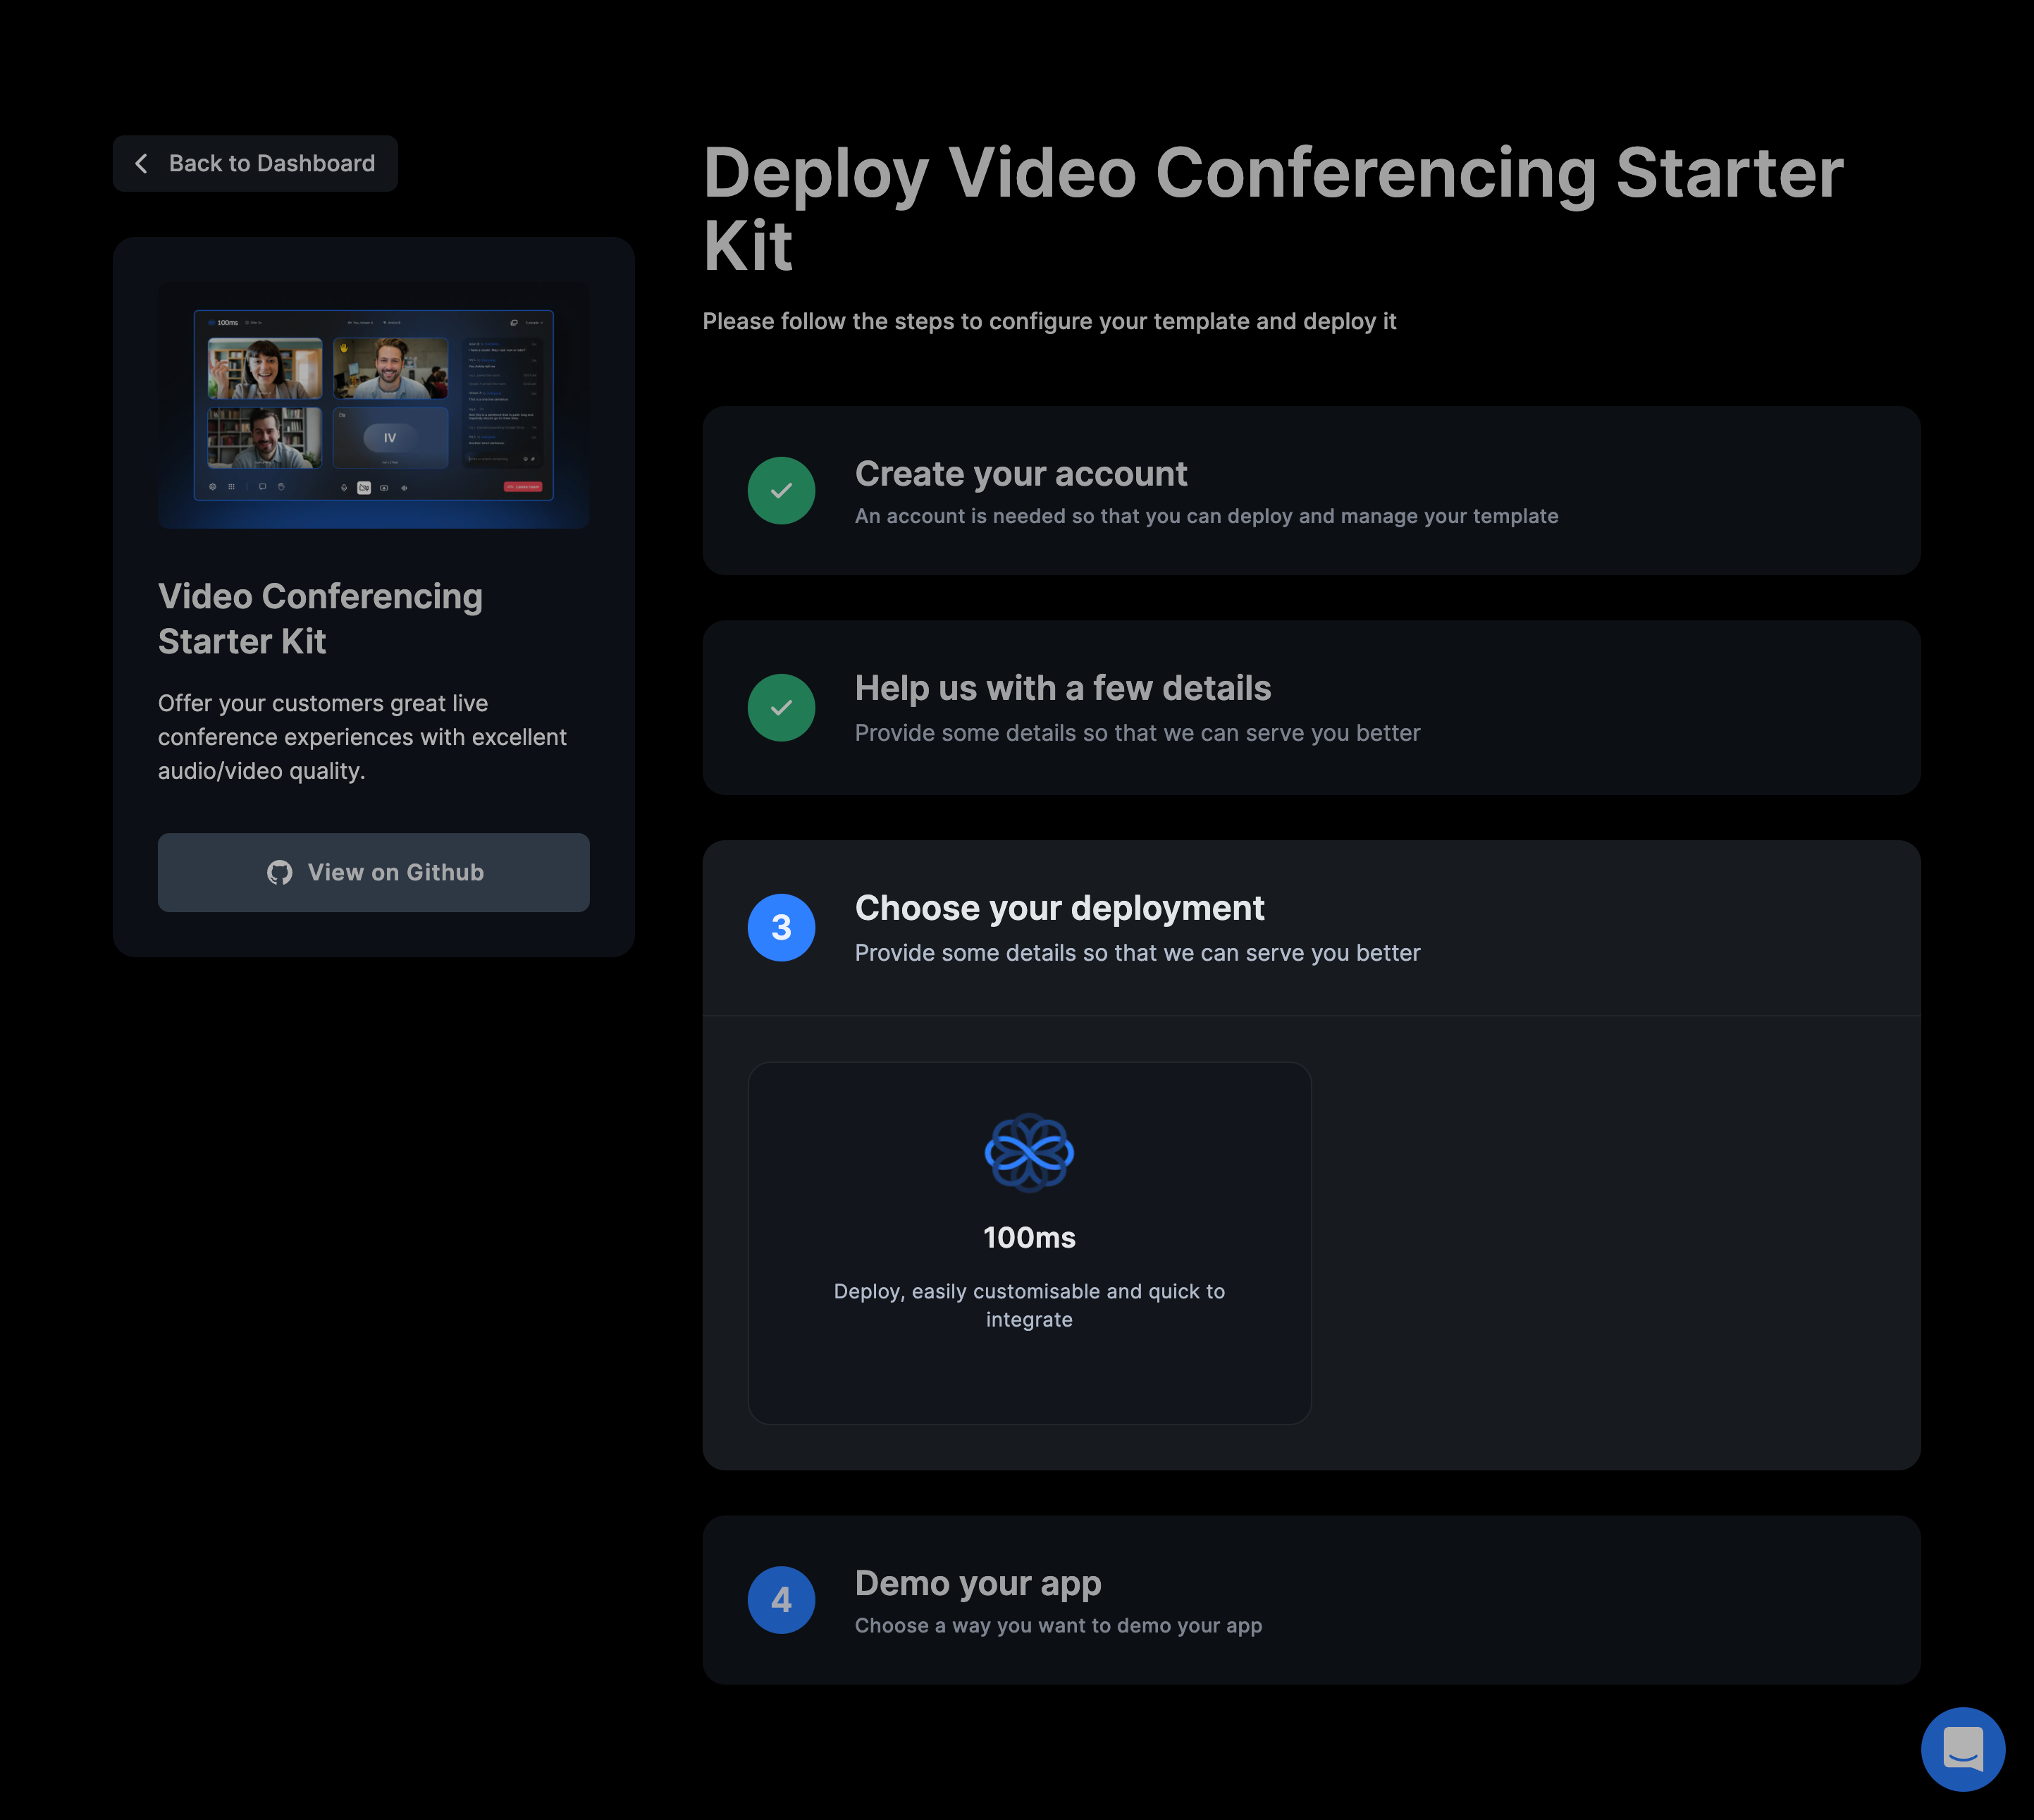 Video Conferencing Starter Kit